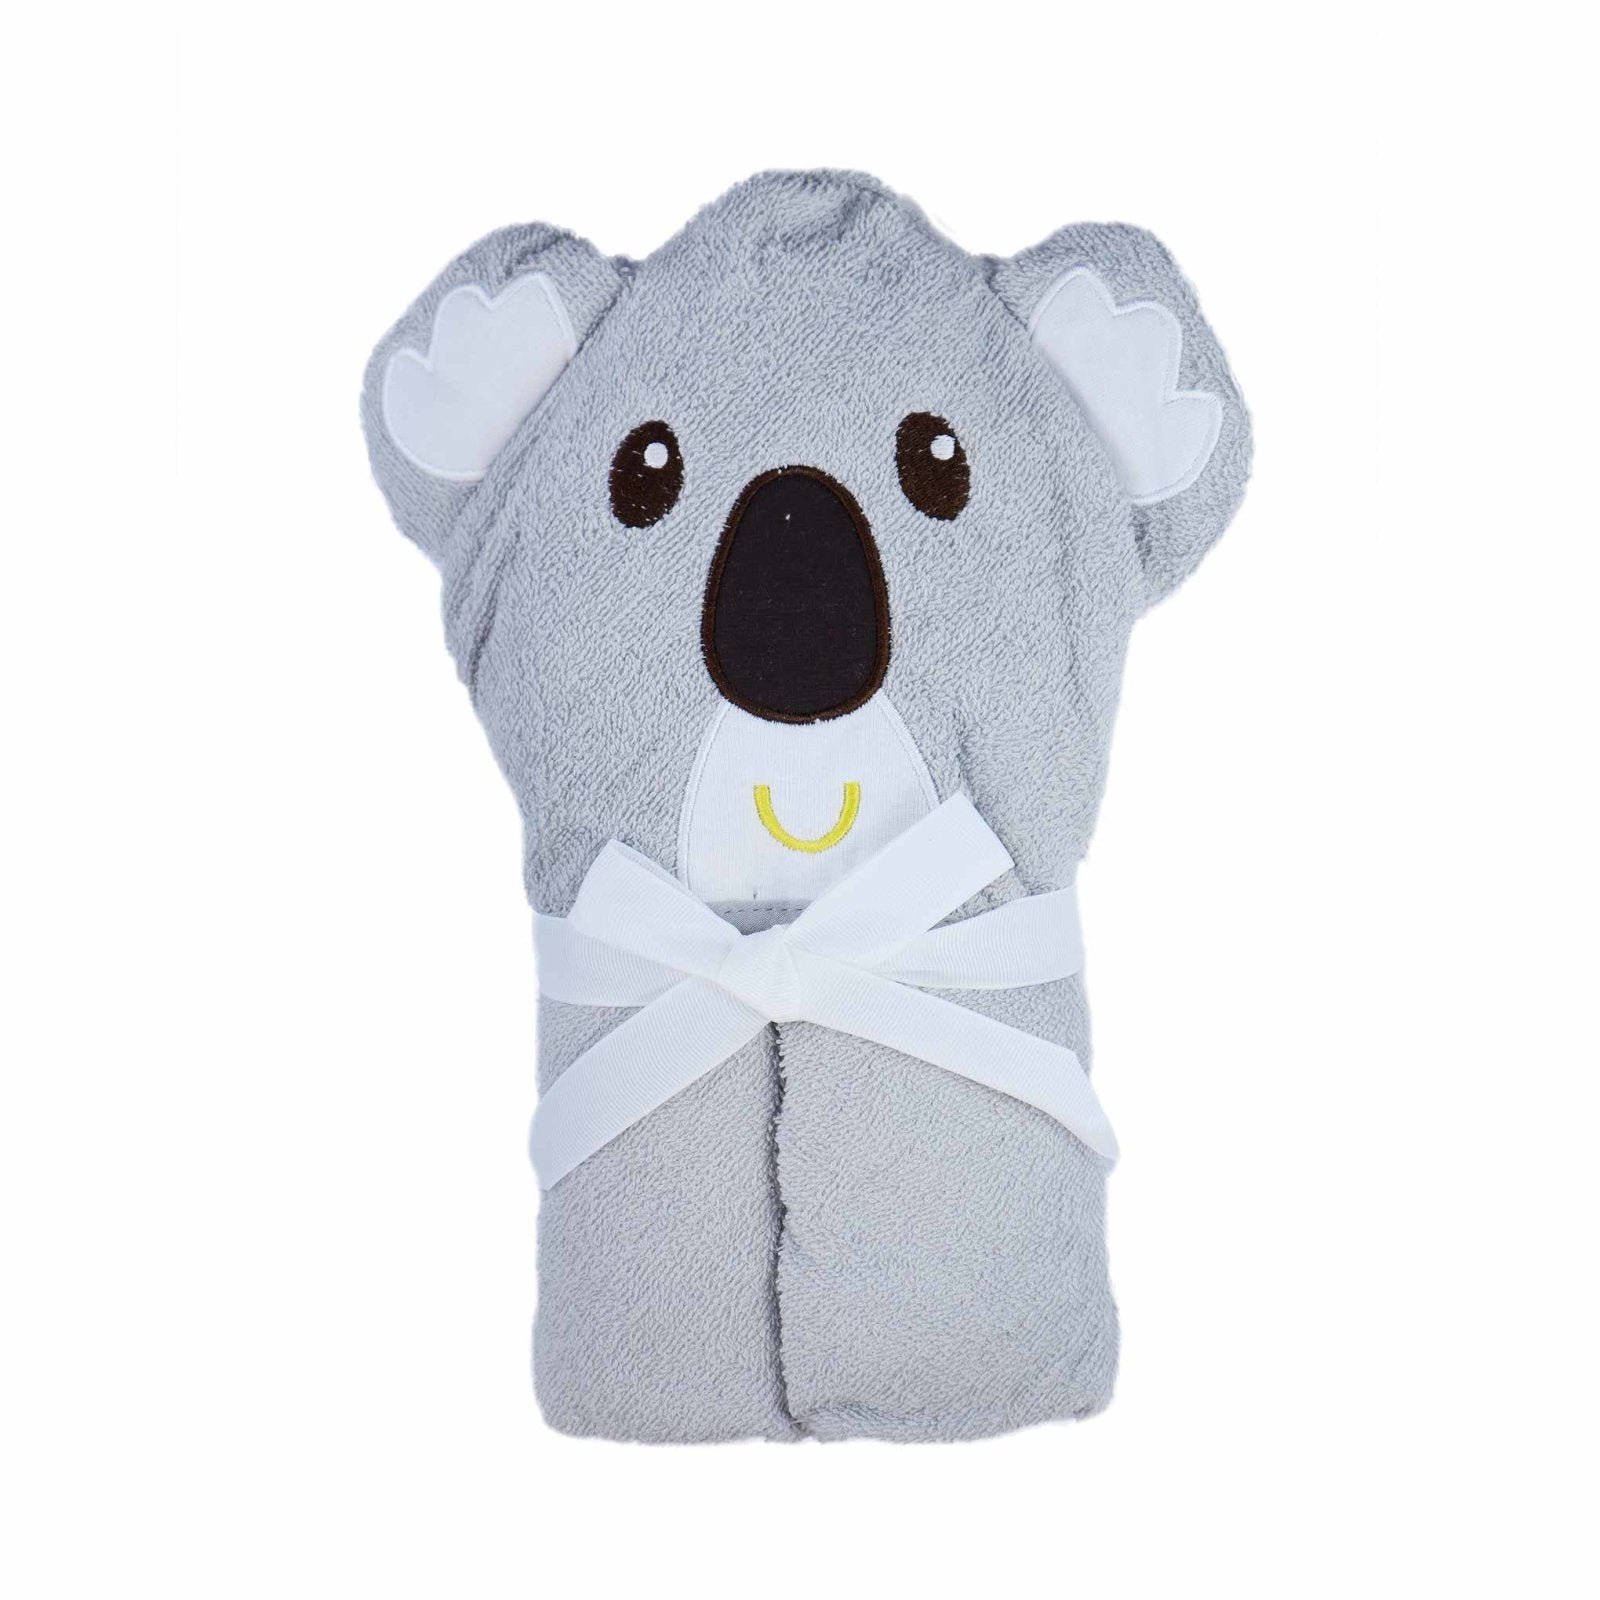 Hooded Towel koala Bear by Little Darling